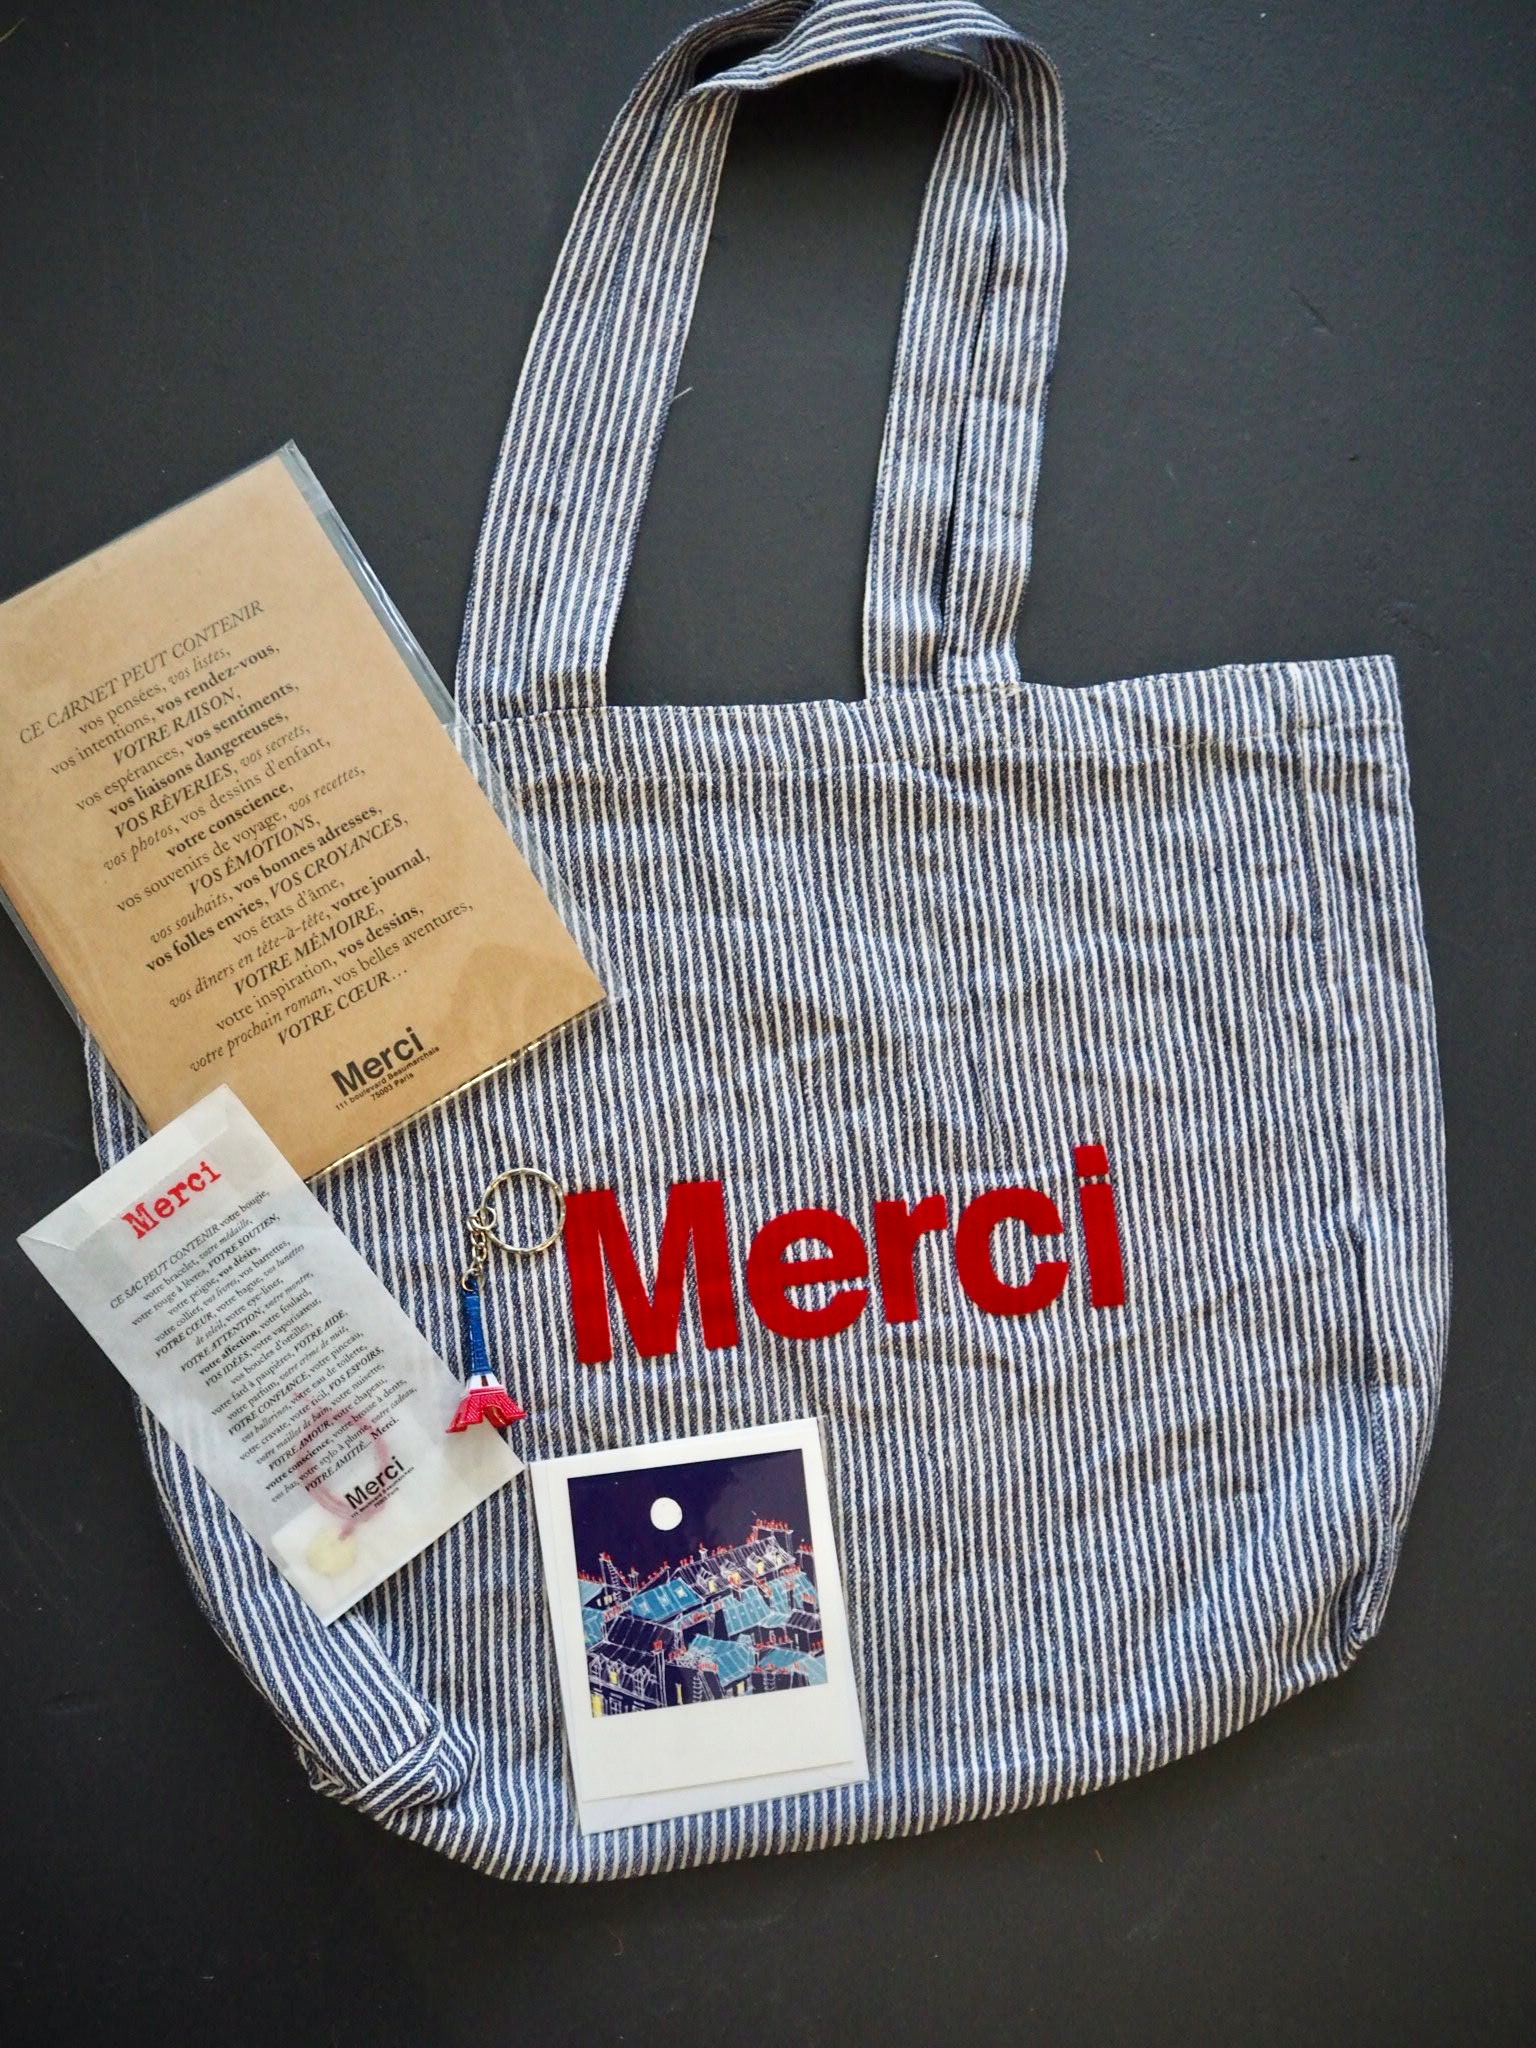 Merci Paris Aesthetic Tote Bag